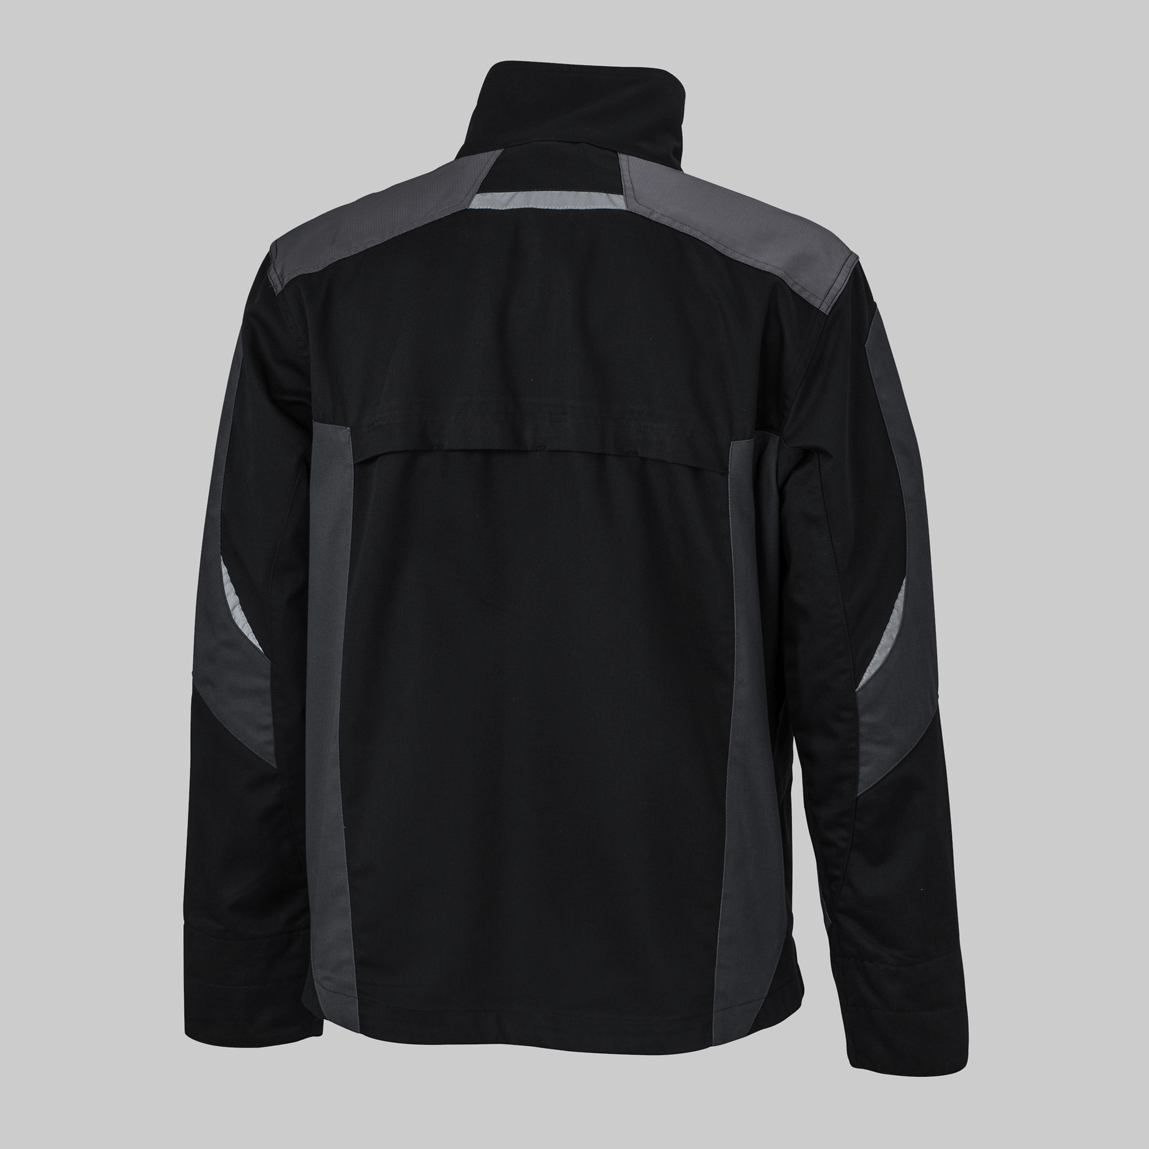 Rückseite einer schwarz-grauen Basic-Arbeitsjacke, Arbeitskleidung mit individueller Stickerei